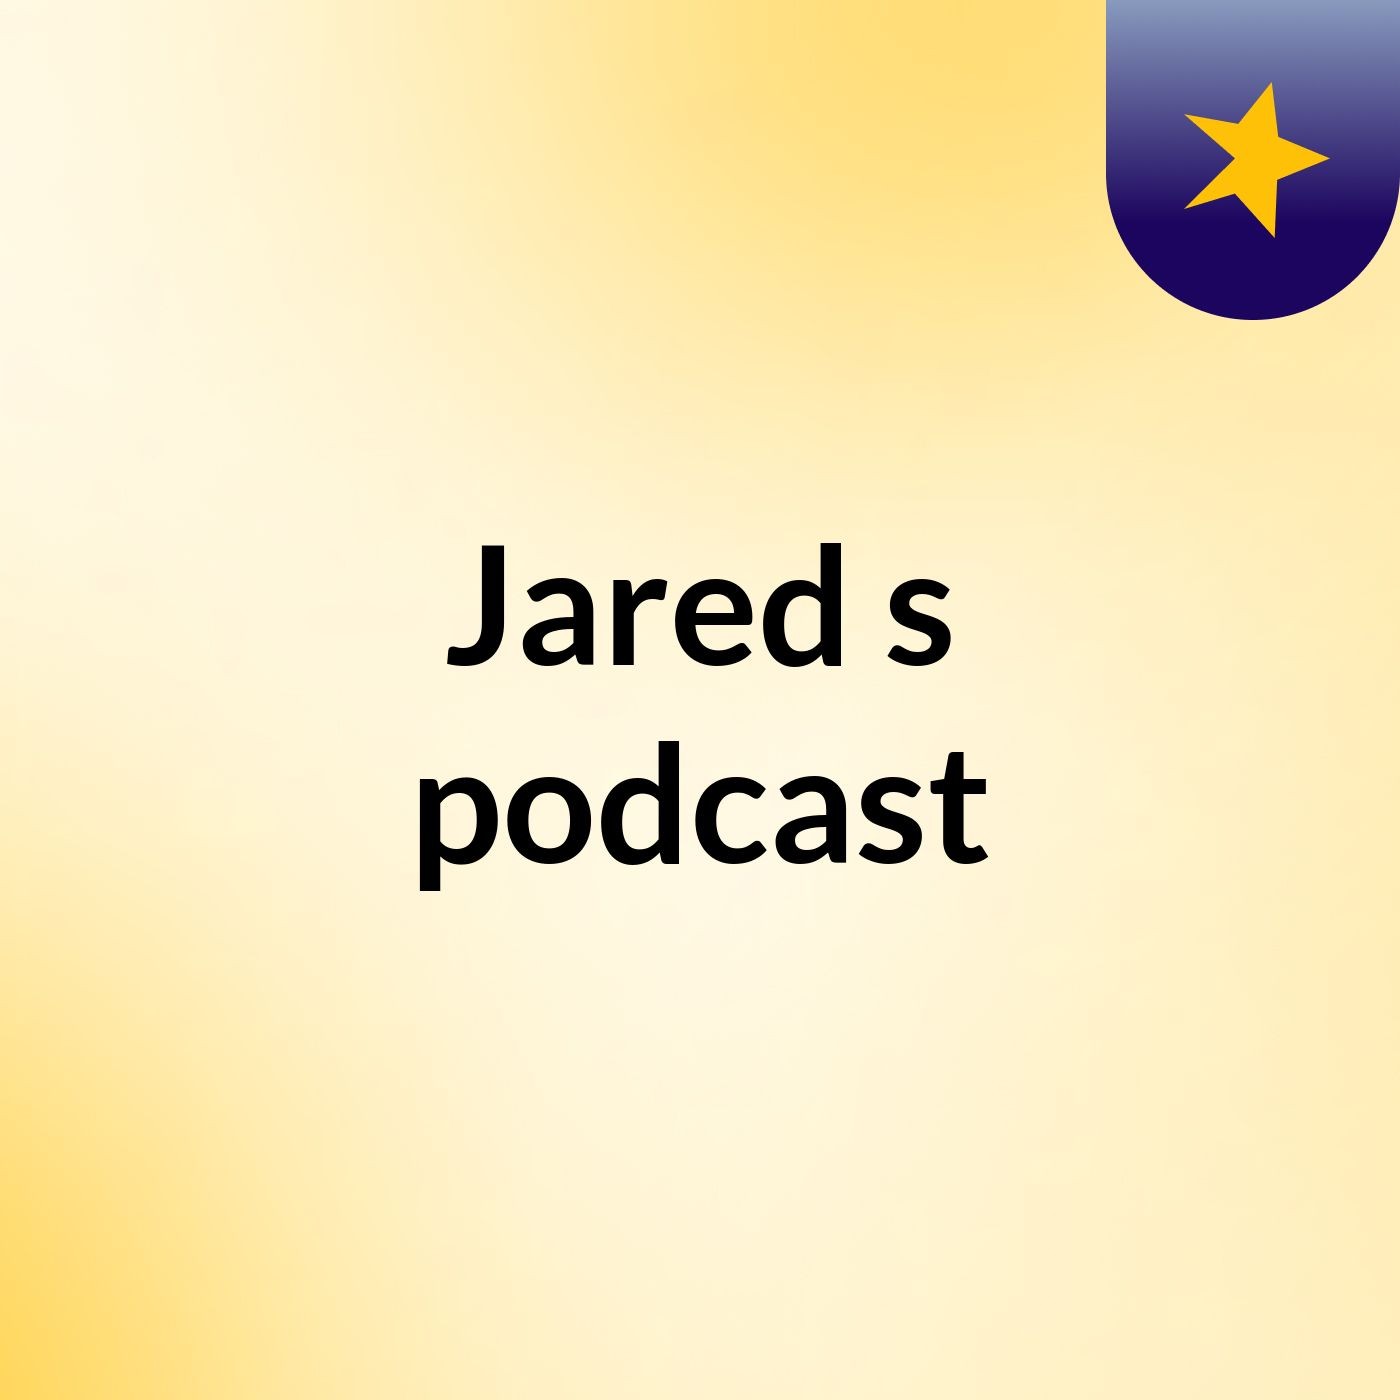 Jared's podcast